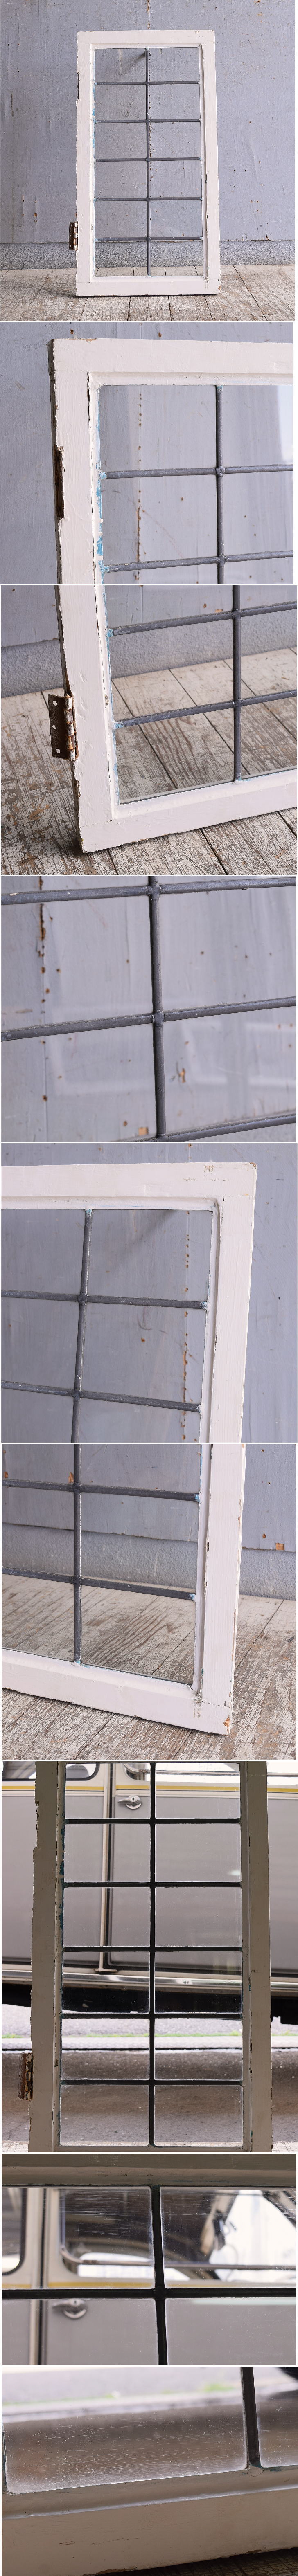 イギリス アンティーク 窓 無色透明 10885